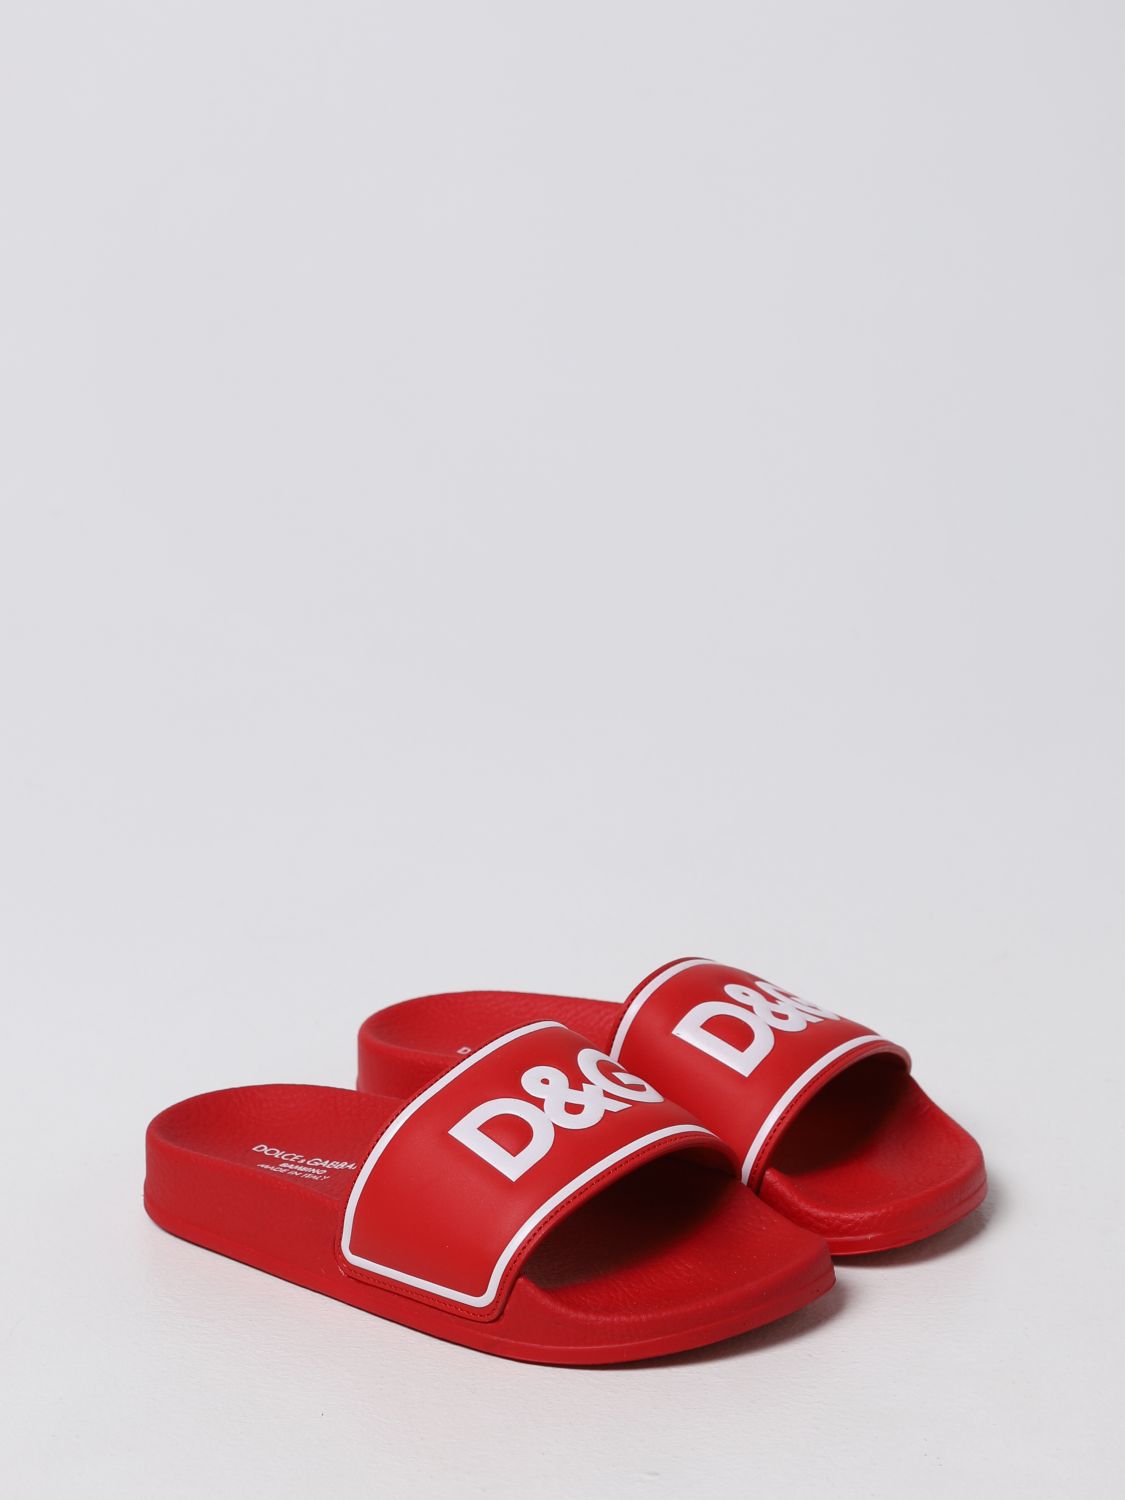 DOLCE & GABBANA: Sandalias con Rojo | Dolce & Gabbana DD0318A6E33 en en GIGLIO.COM